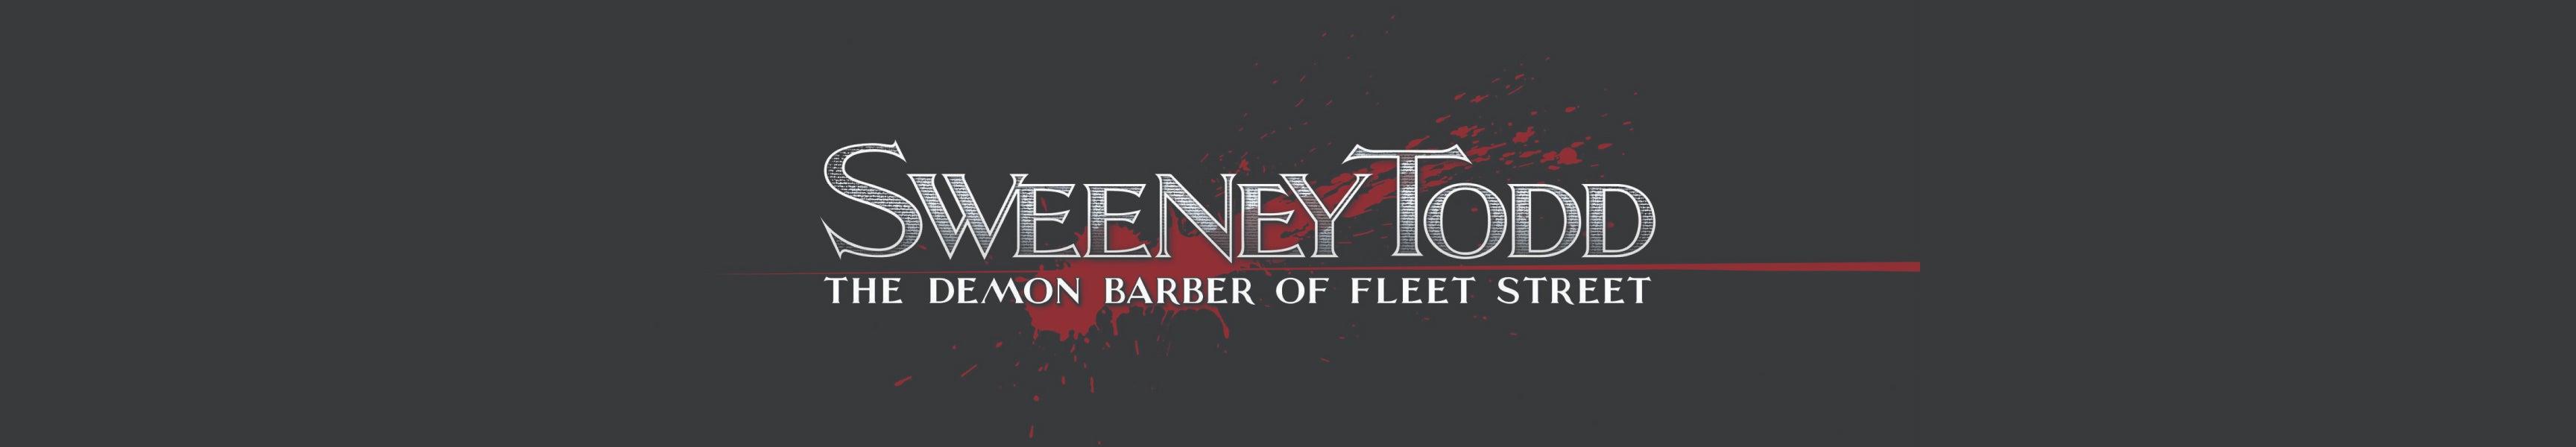 Sweeney Todd: Le barbier démoniaque de Fleet Street